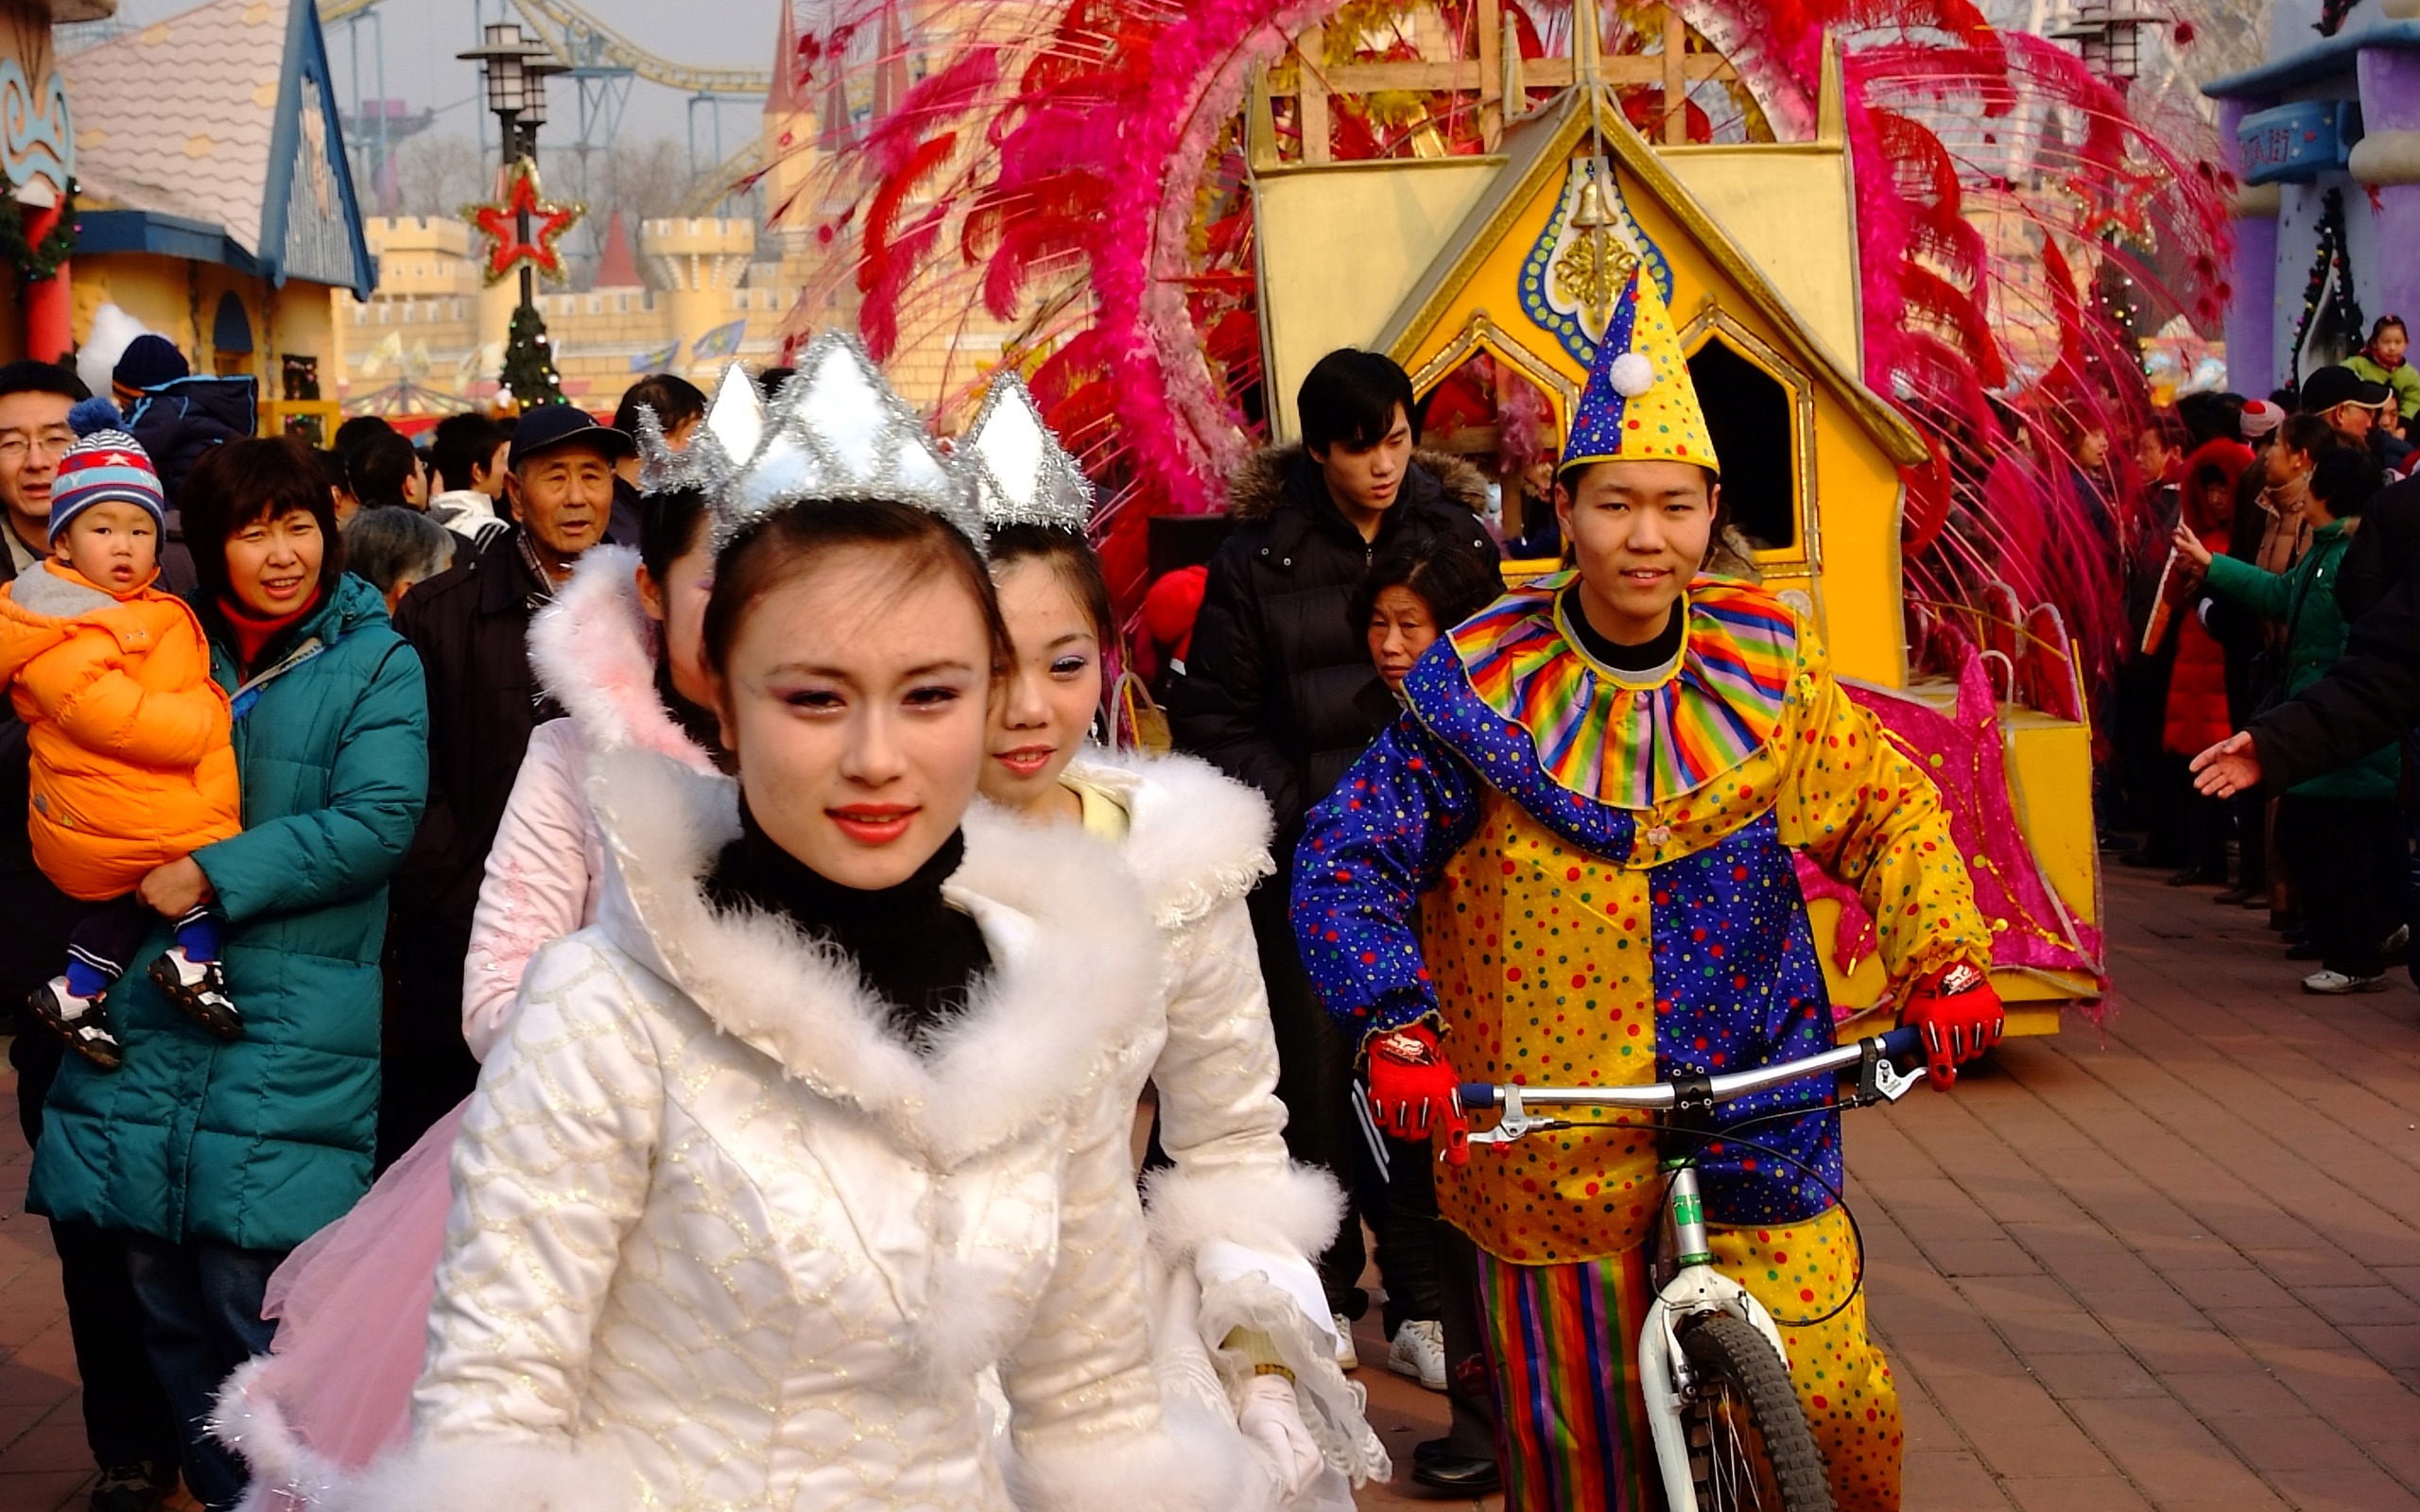 Happy Čínský Nový rok v Pekingu Yang Temple (prutu práce) #1 - 2560x1600